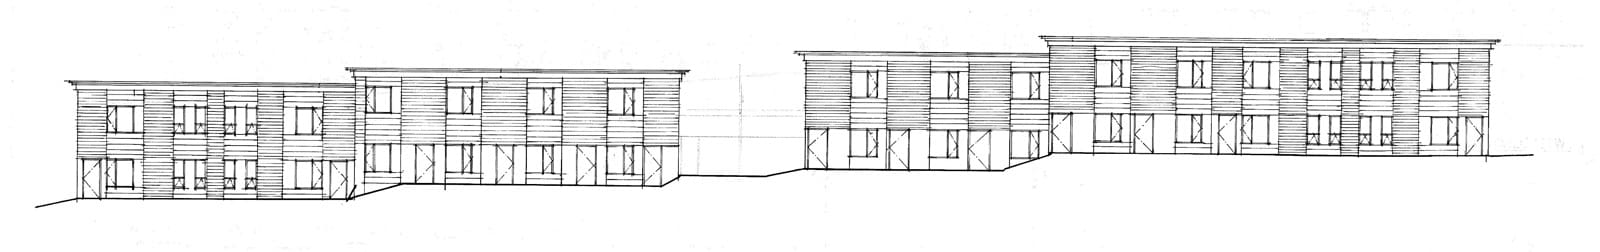 Wentworth II - Vermont Architects